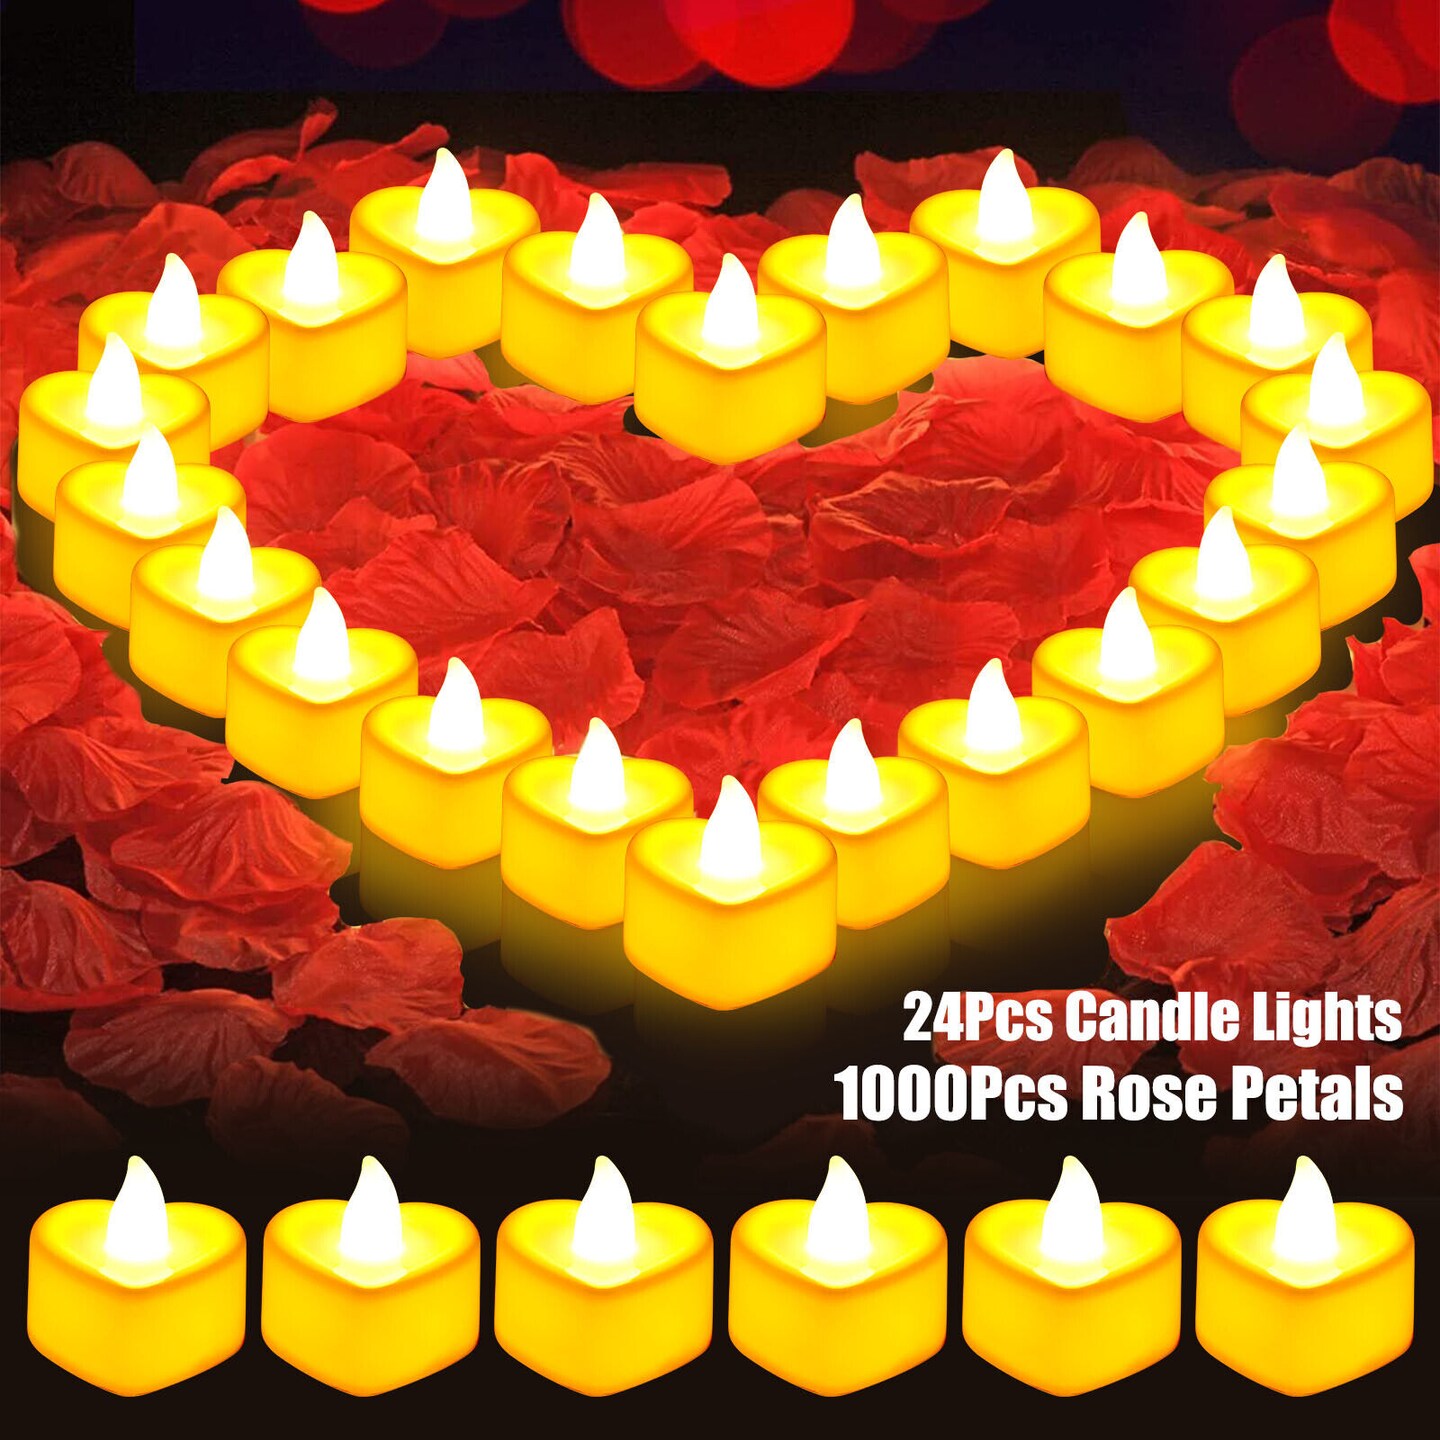 1000Pcs Artificial Rose Petals + 24Pcs LED Heart Light Candles